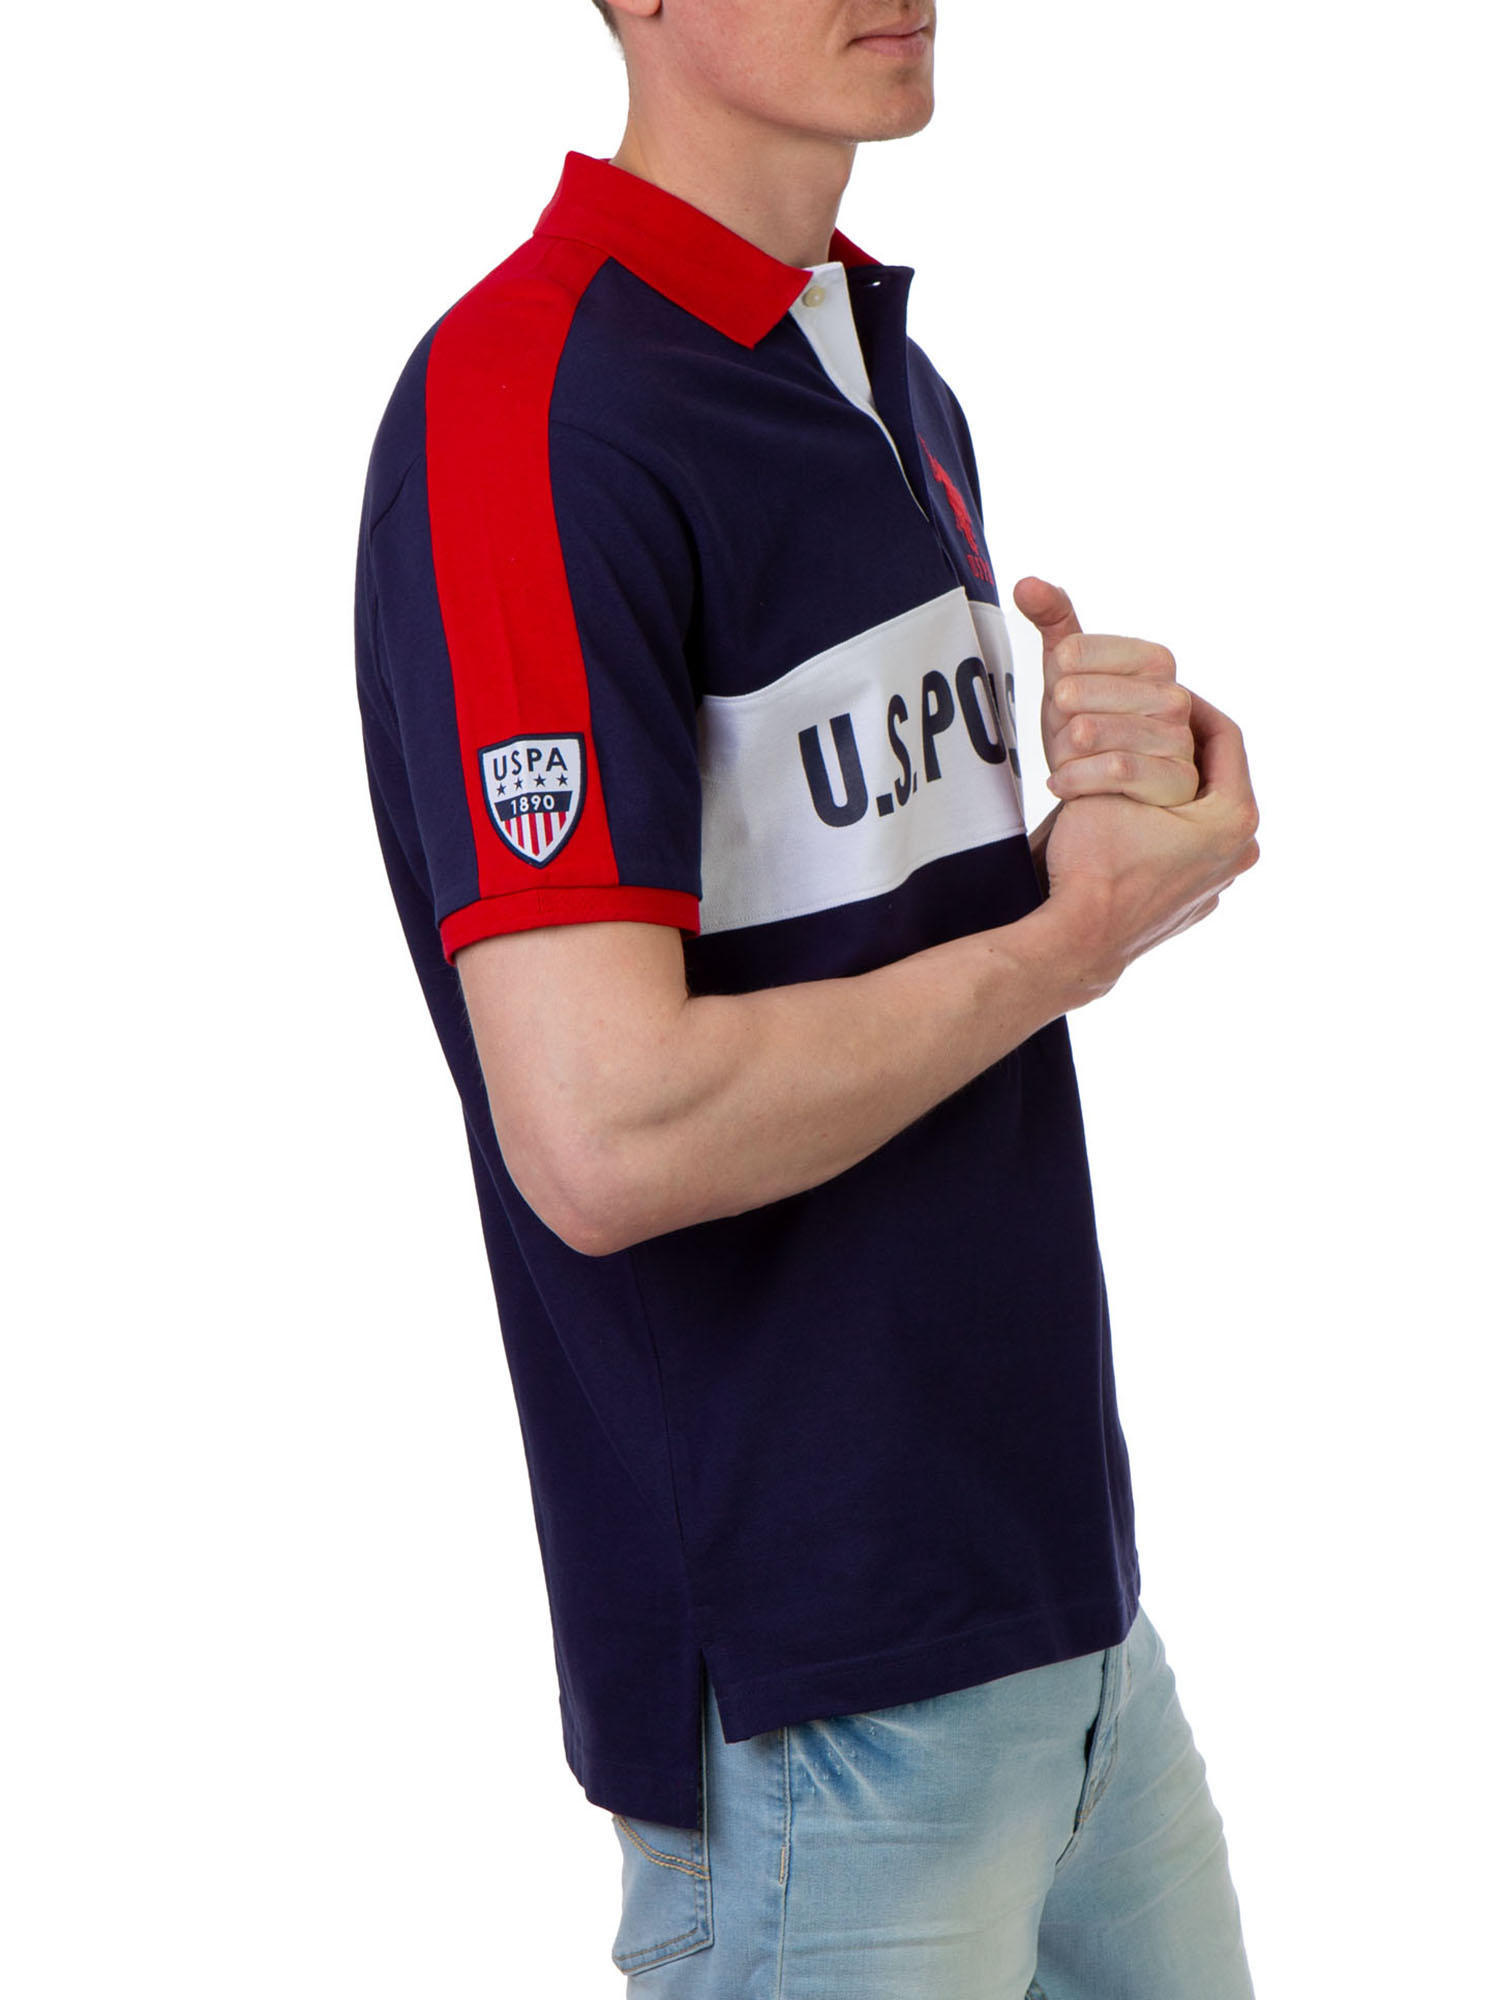 U.S. Polo Assn. Men's Color Block Pique Polo Shirt - image 1 of 3